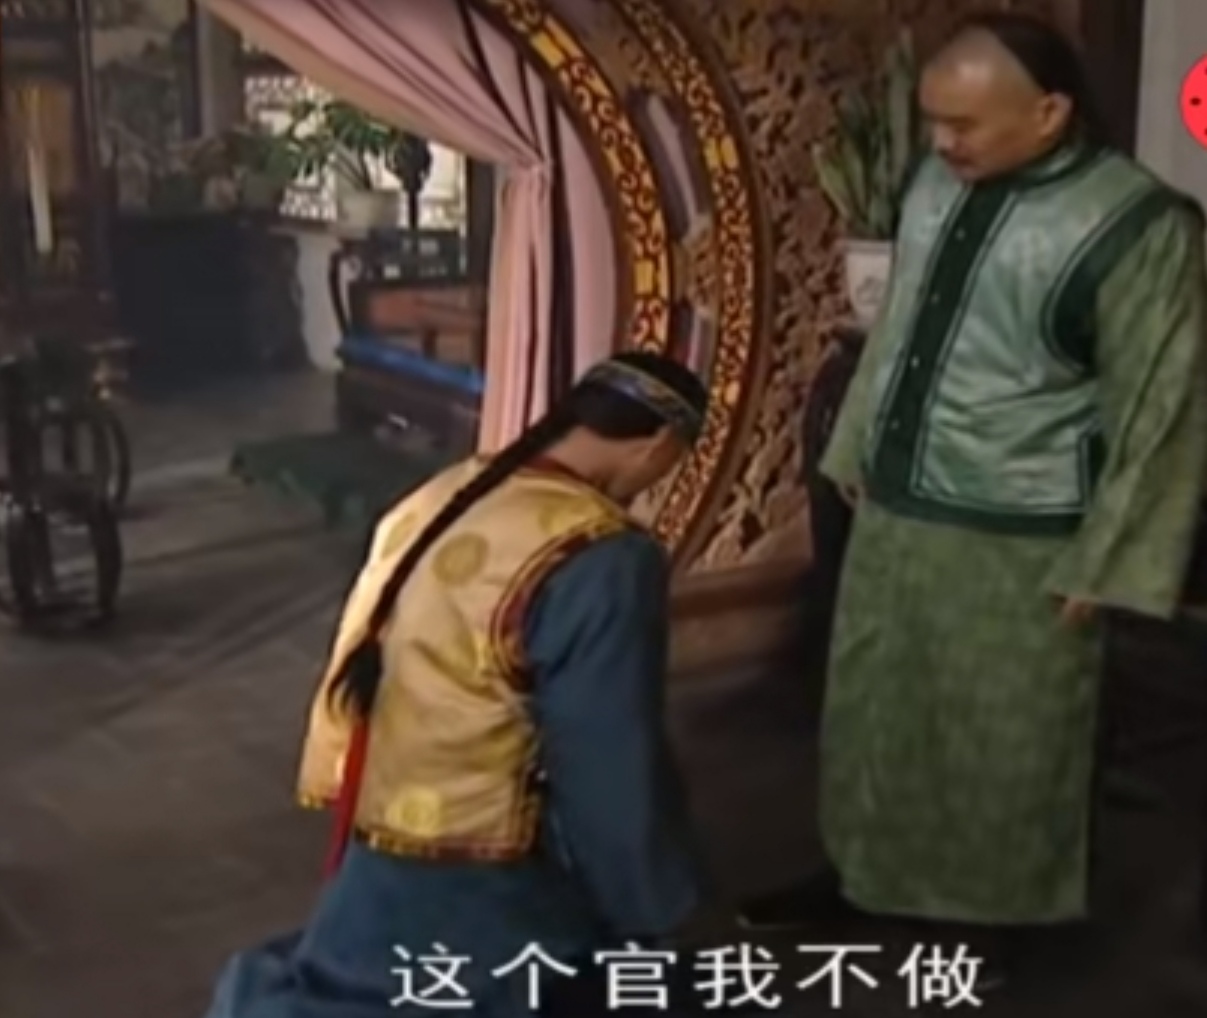 《雍正王朝》探花刘墨林为了“女人”与隆公子死磕而放弃前程值得